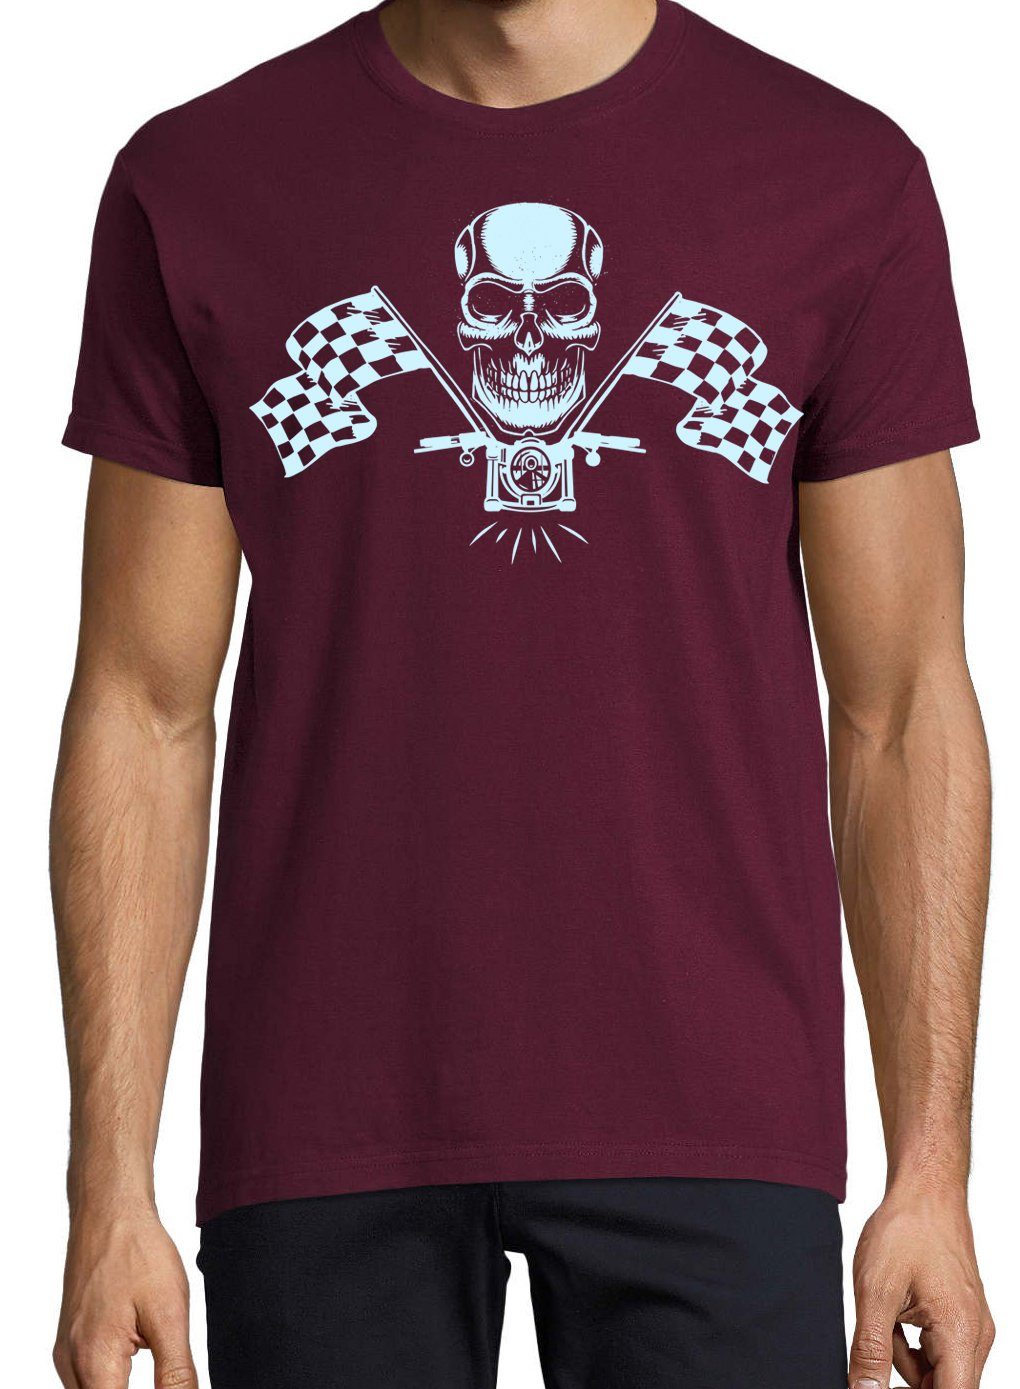 Youth Designz T-Shirt MotorradSkull lustigem mit Burgund Herren-Tshirt Spruch